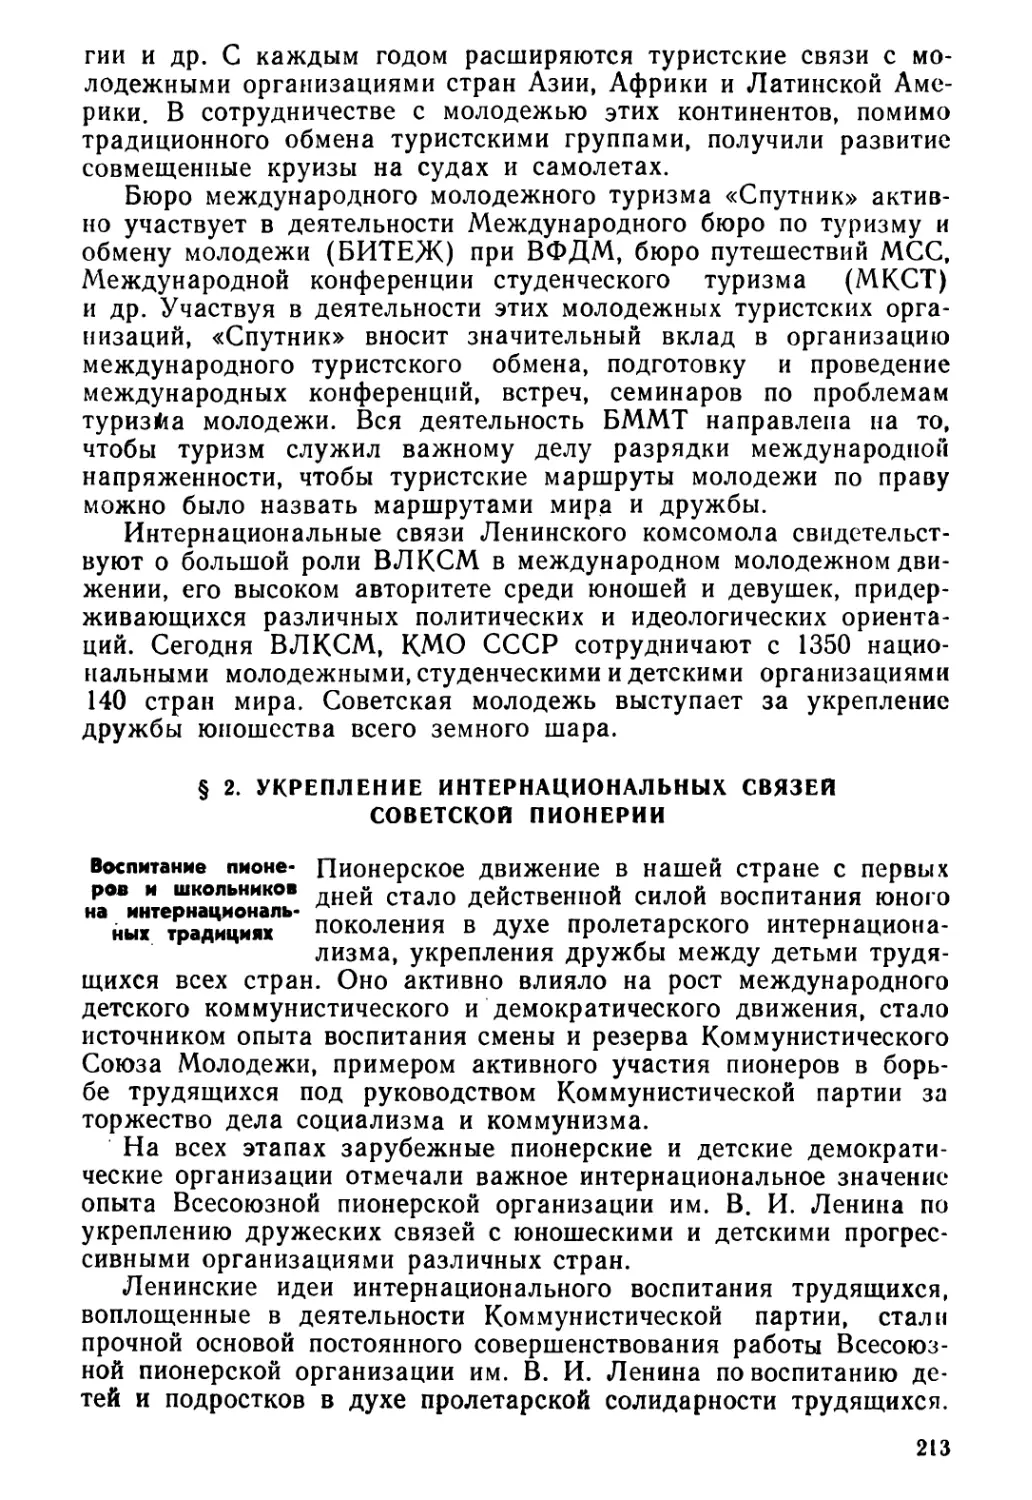 § 2. Укрепление интернациональных связей советской пионерии